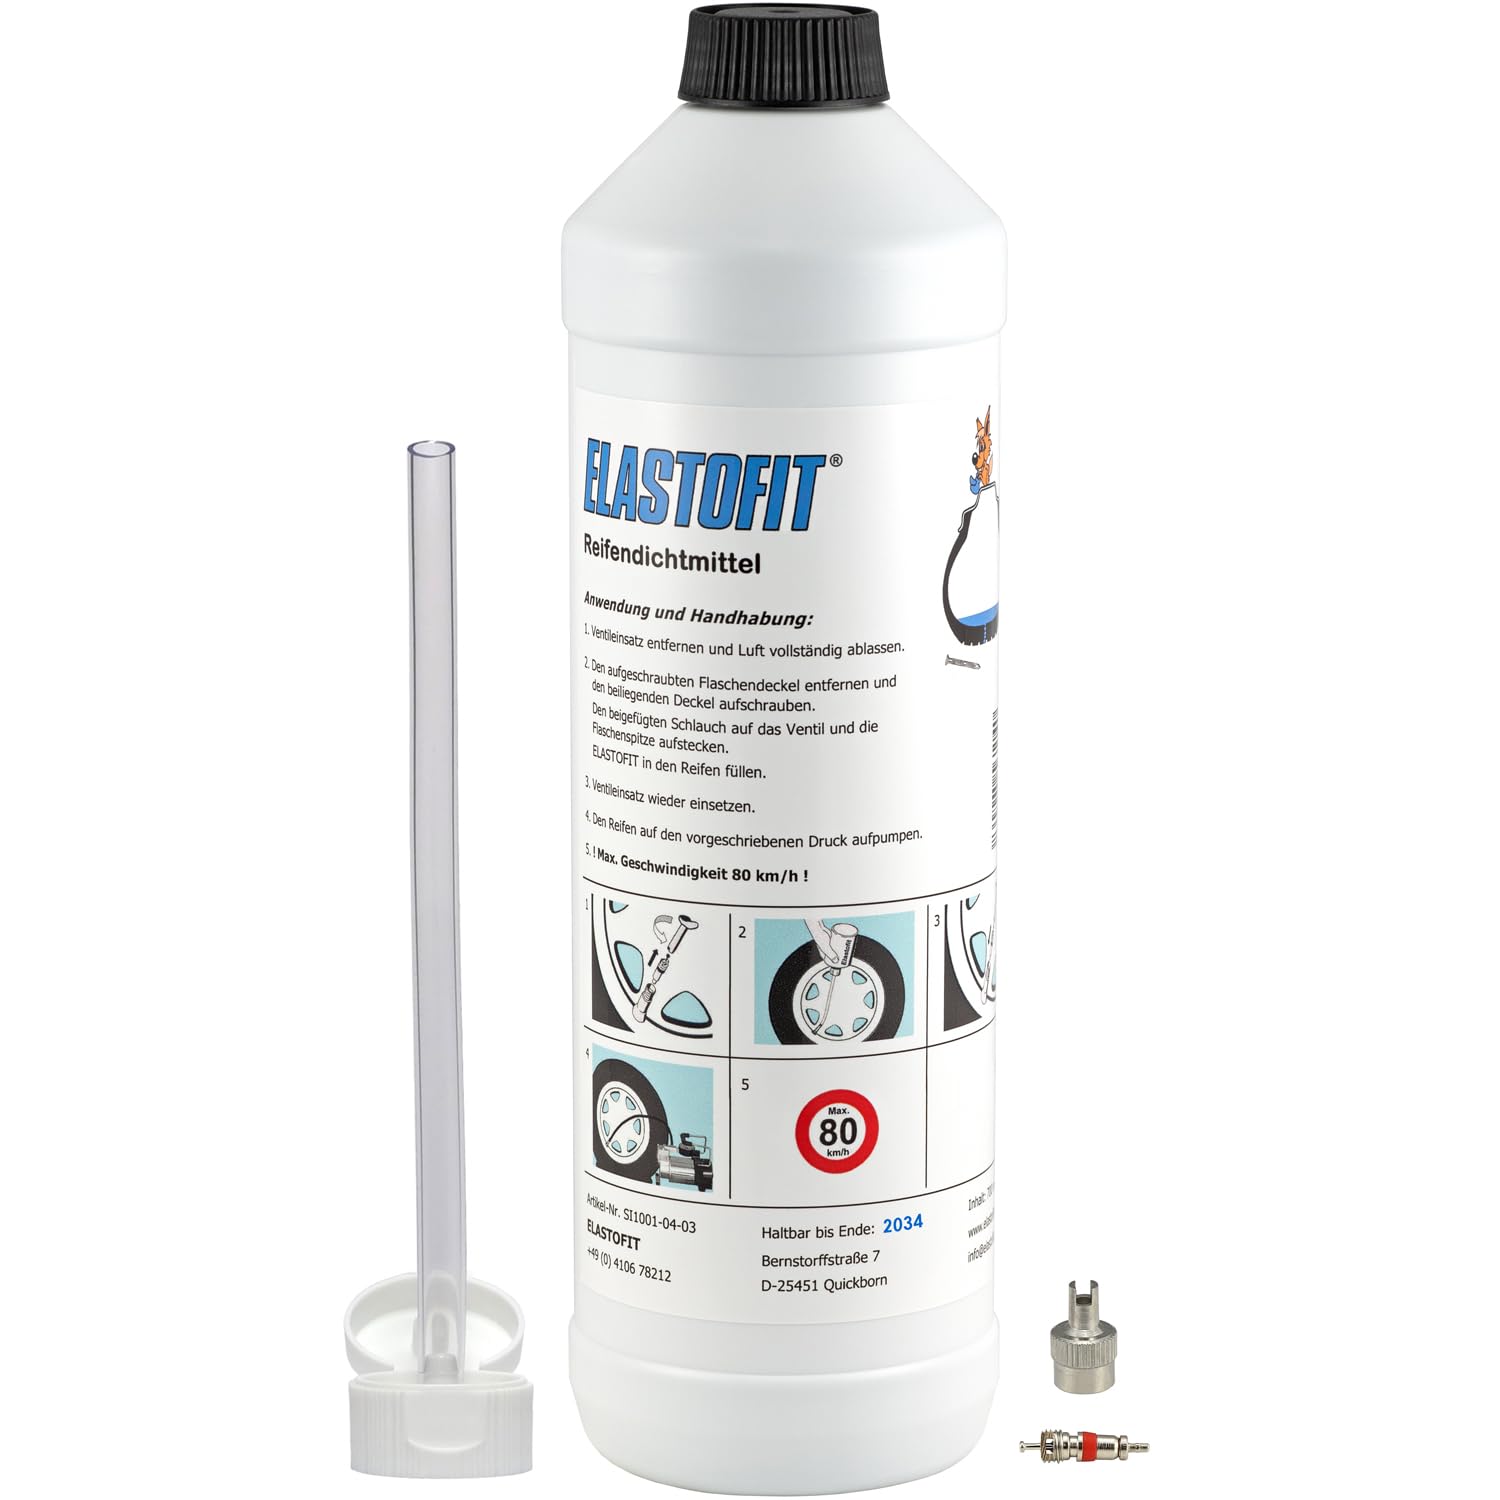 ELASTOFIT Nachfüllpack Pannenset Reifendichtmittel Ersatzflasche für alle PKW/SUV usw. 10 Jahre haltbar (700ml) von ELASTOFIT